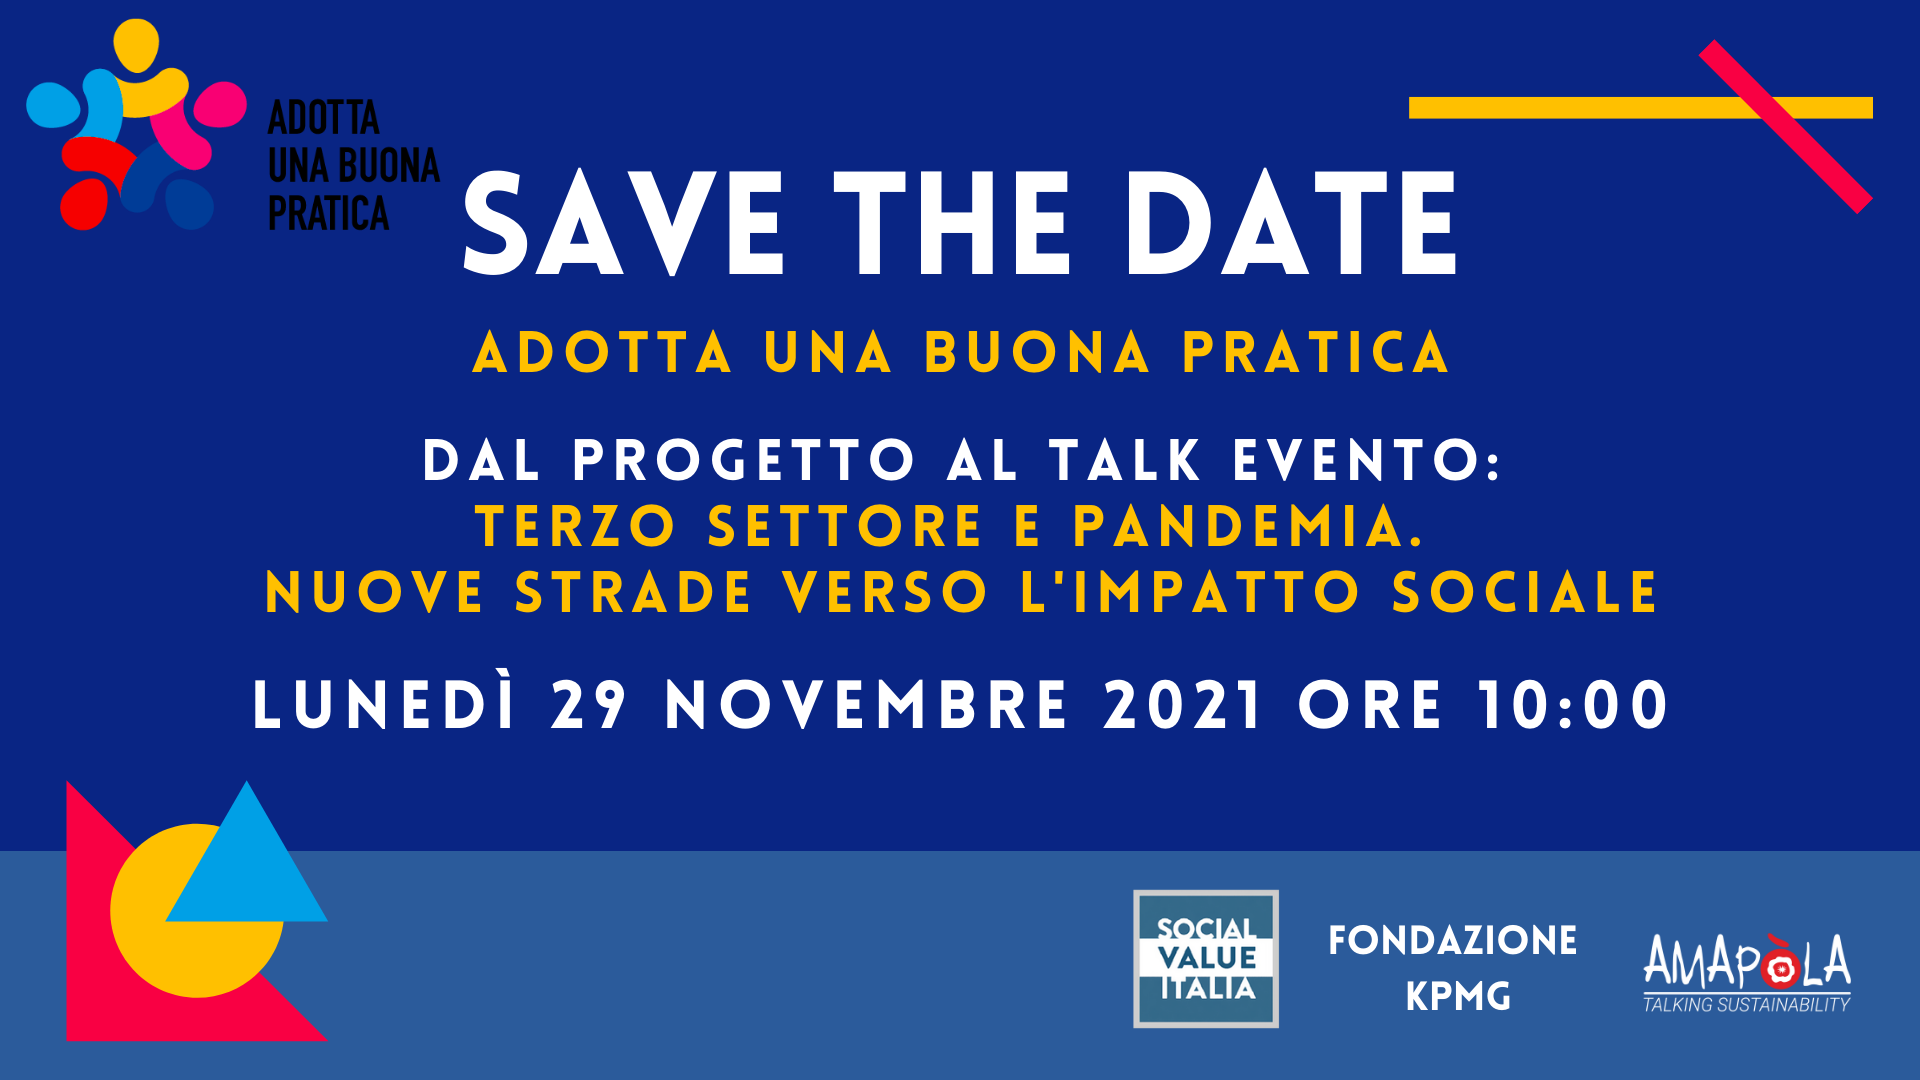 Save the date convegno: Terzo settore e pandemia. Nuove strade verso l’impatto sociale 29/11